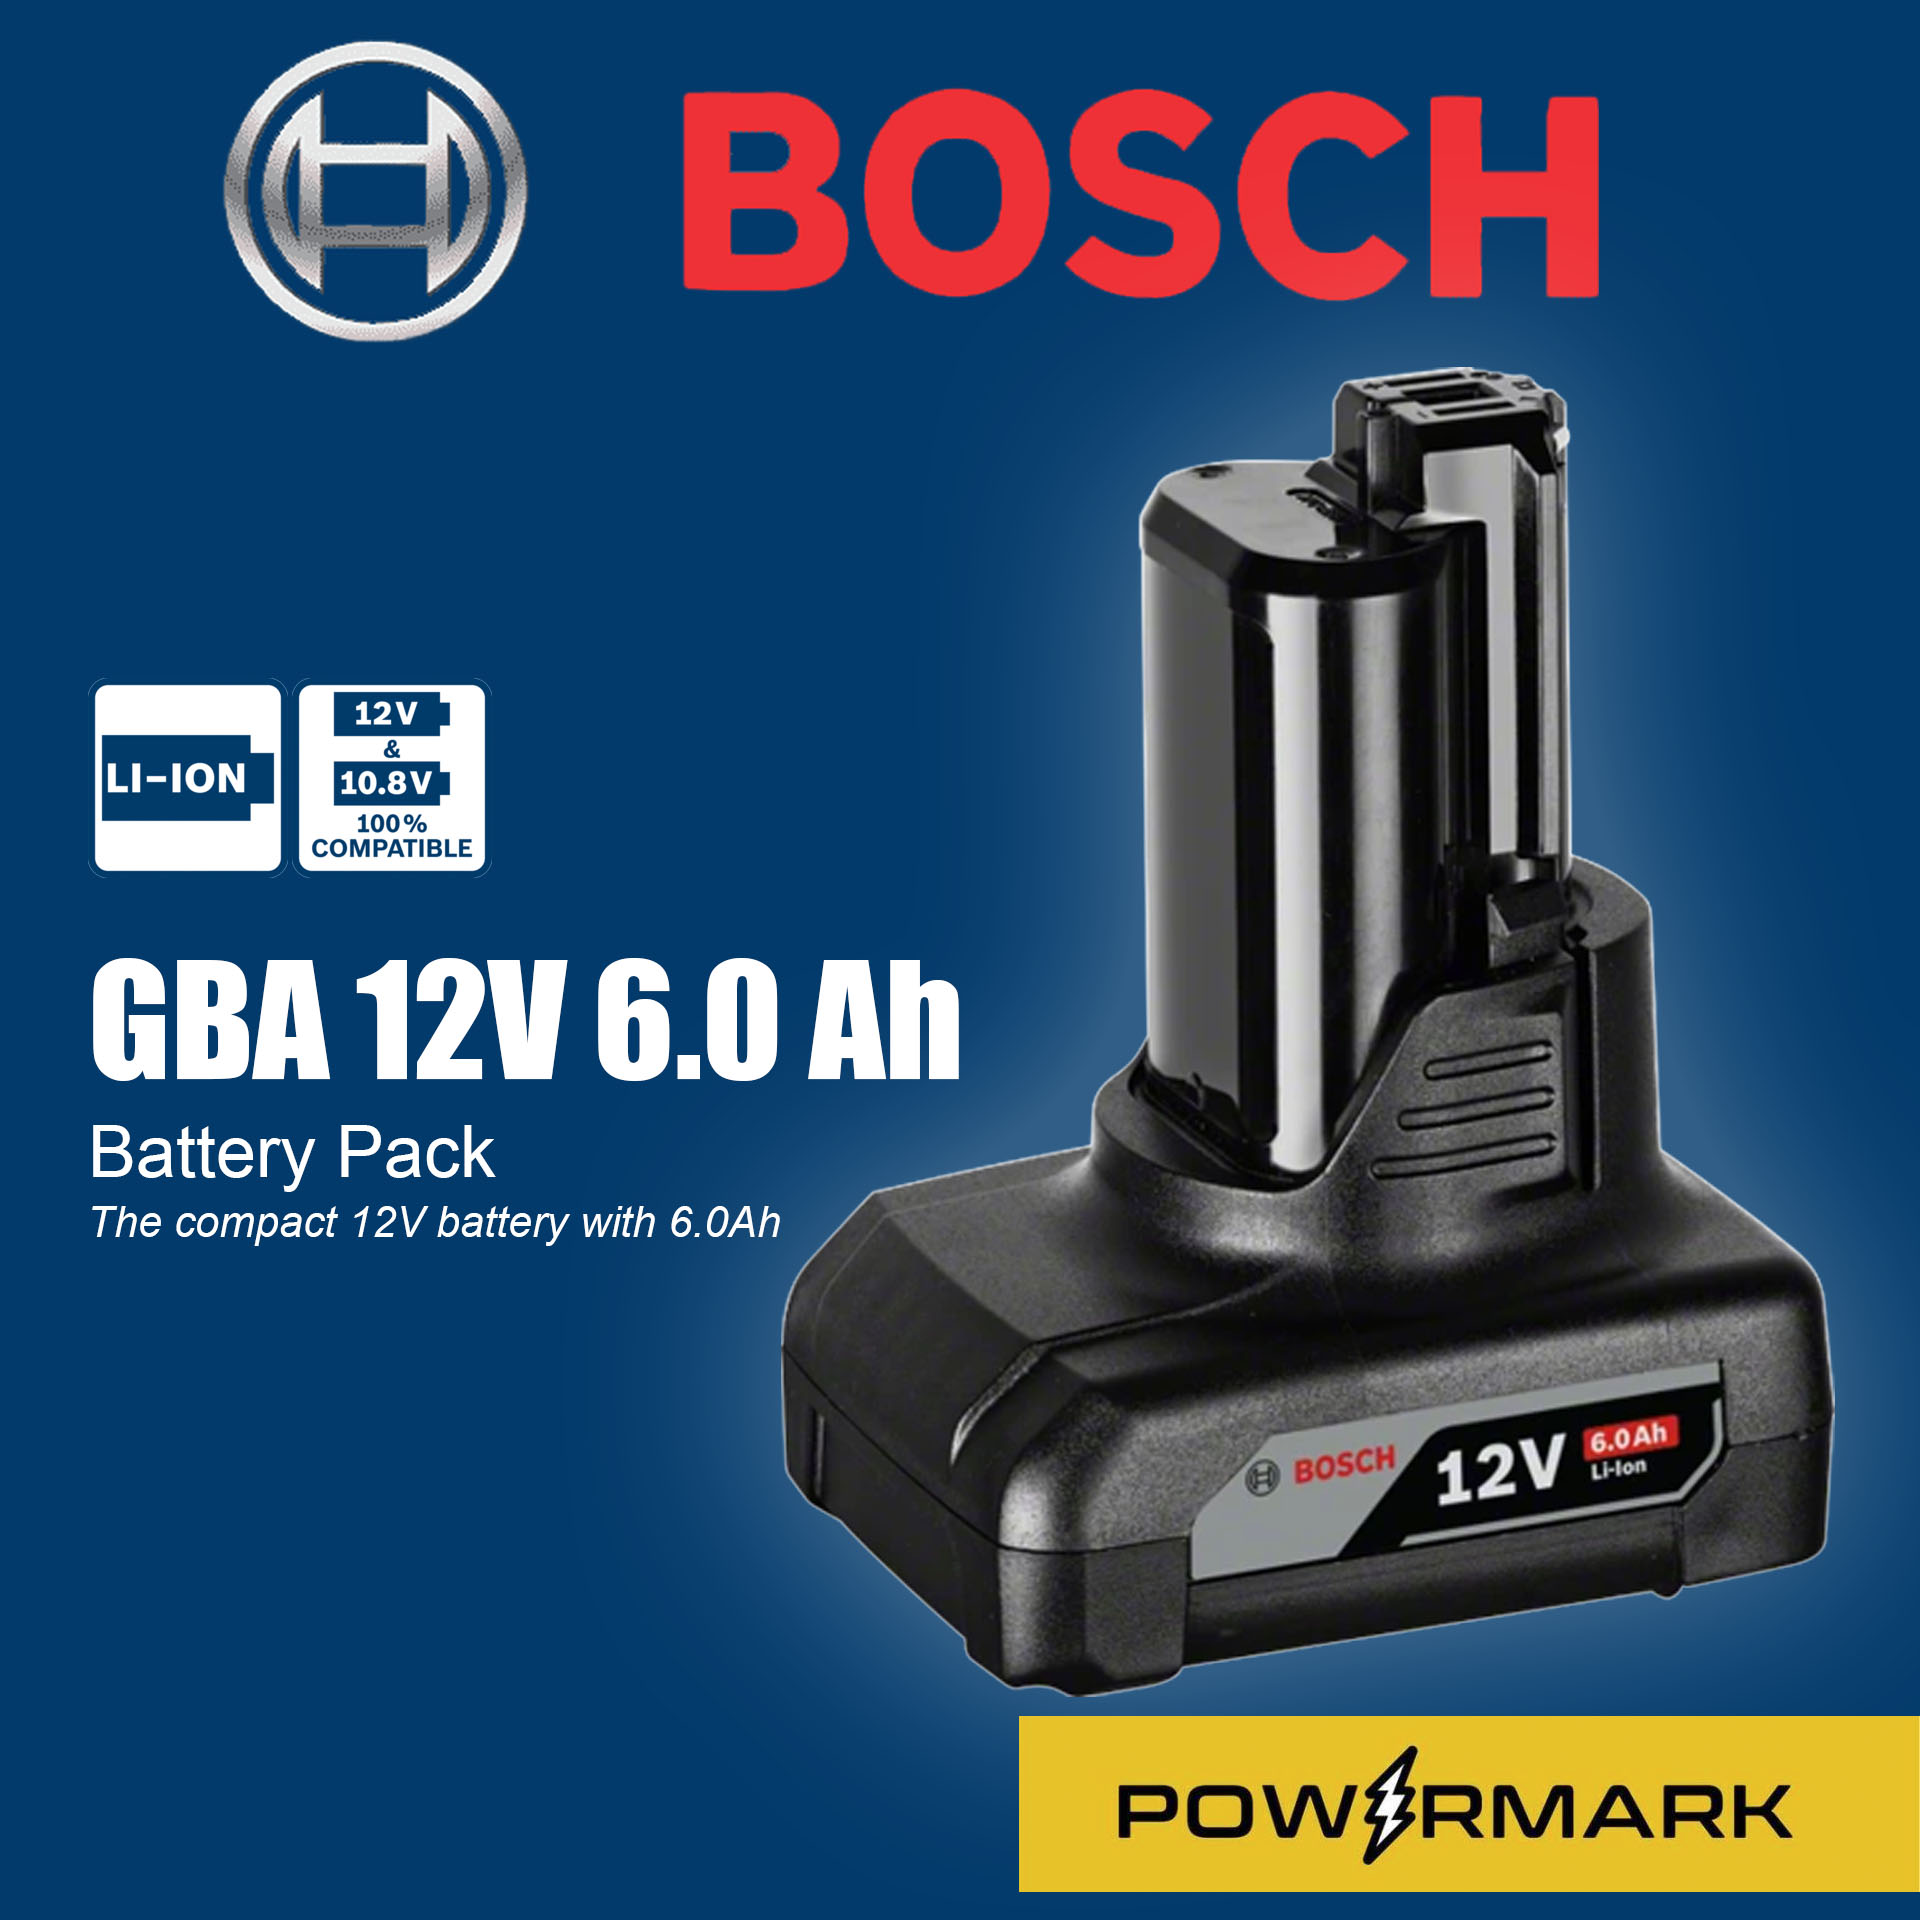 Gba 12v. 1149030 Battery Pack 2 PCS Bosch GBA 12v 3.0Ah. GBA 12v сборка. GBA 12v Teardown. Серийный номер Bosch GBA 12v.